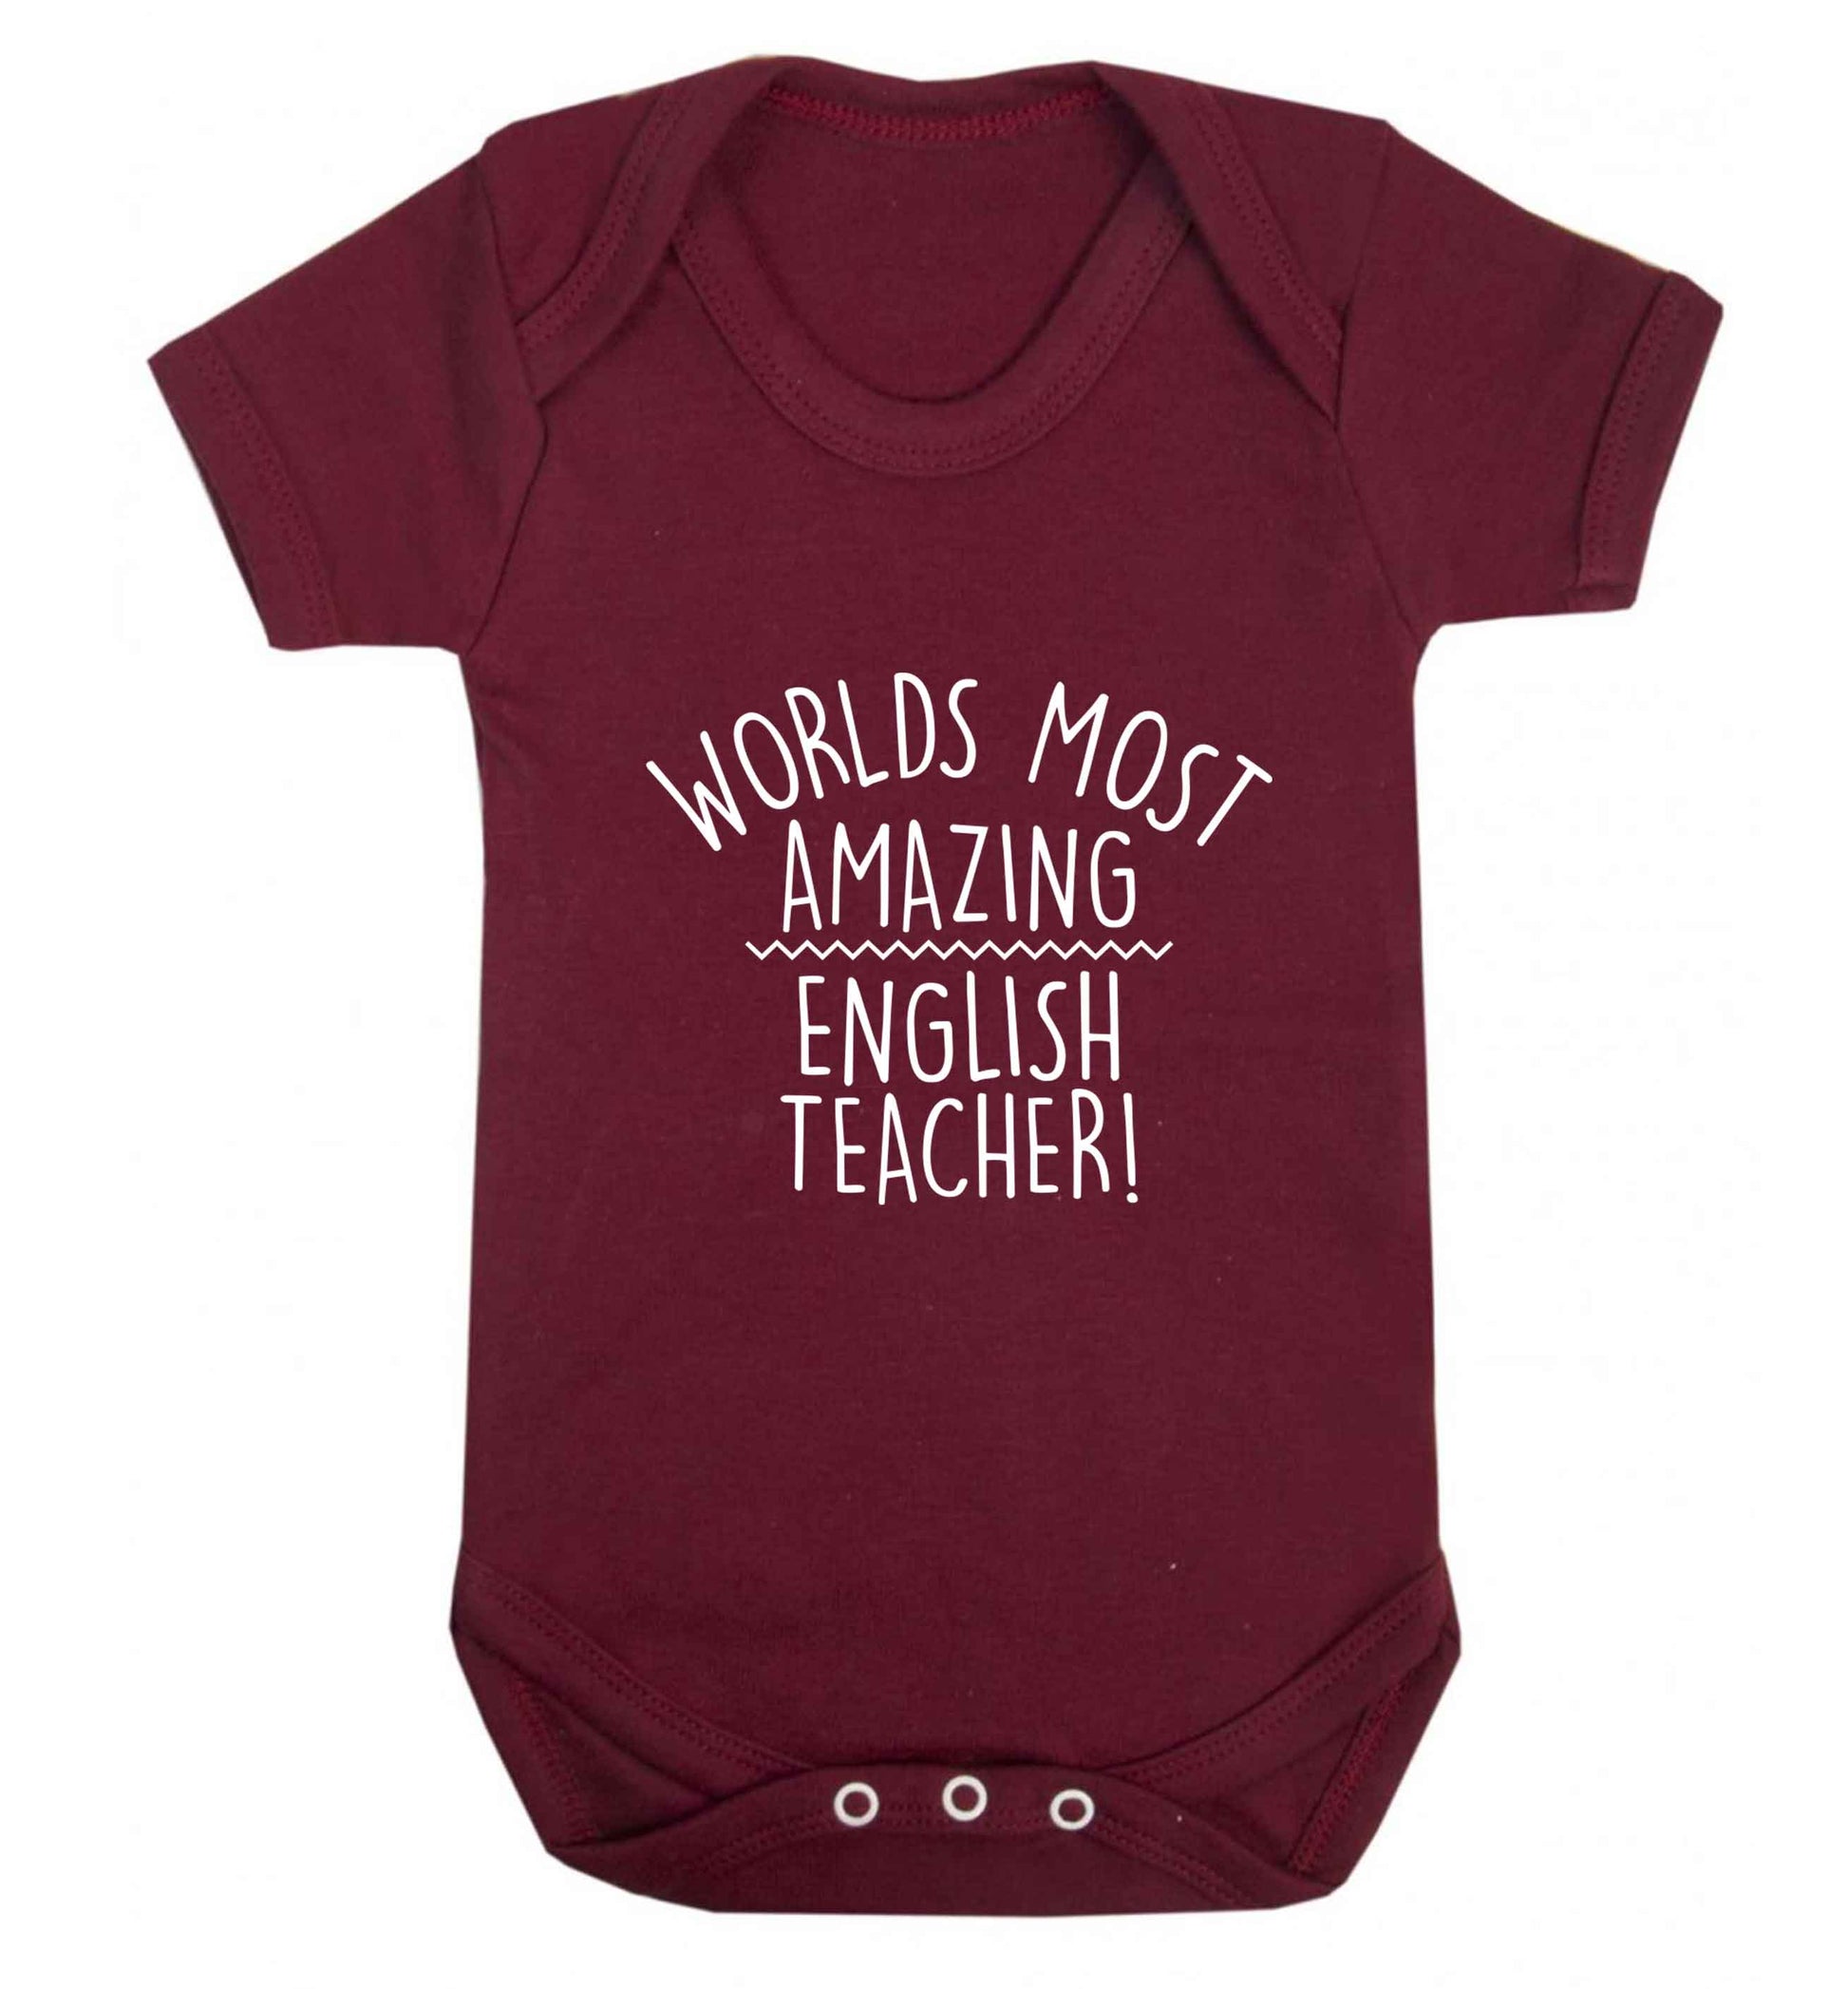 Worlds most amazing English teacher baby vest maroon 18-24 months